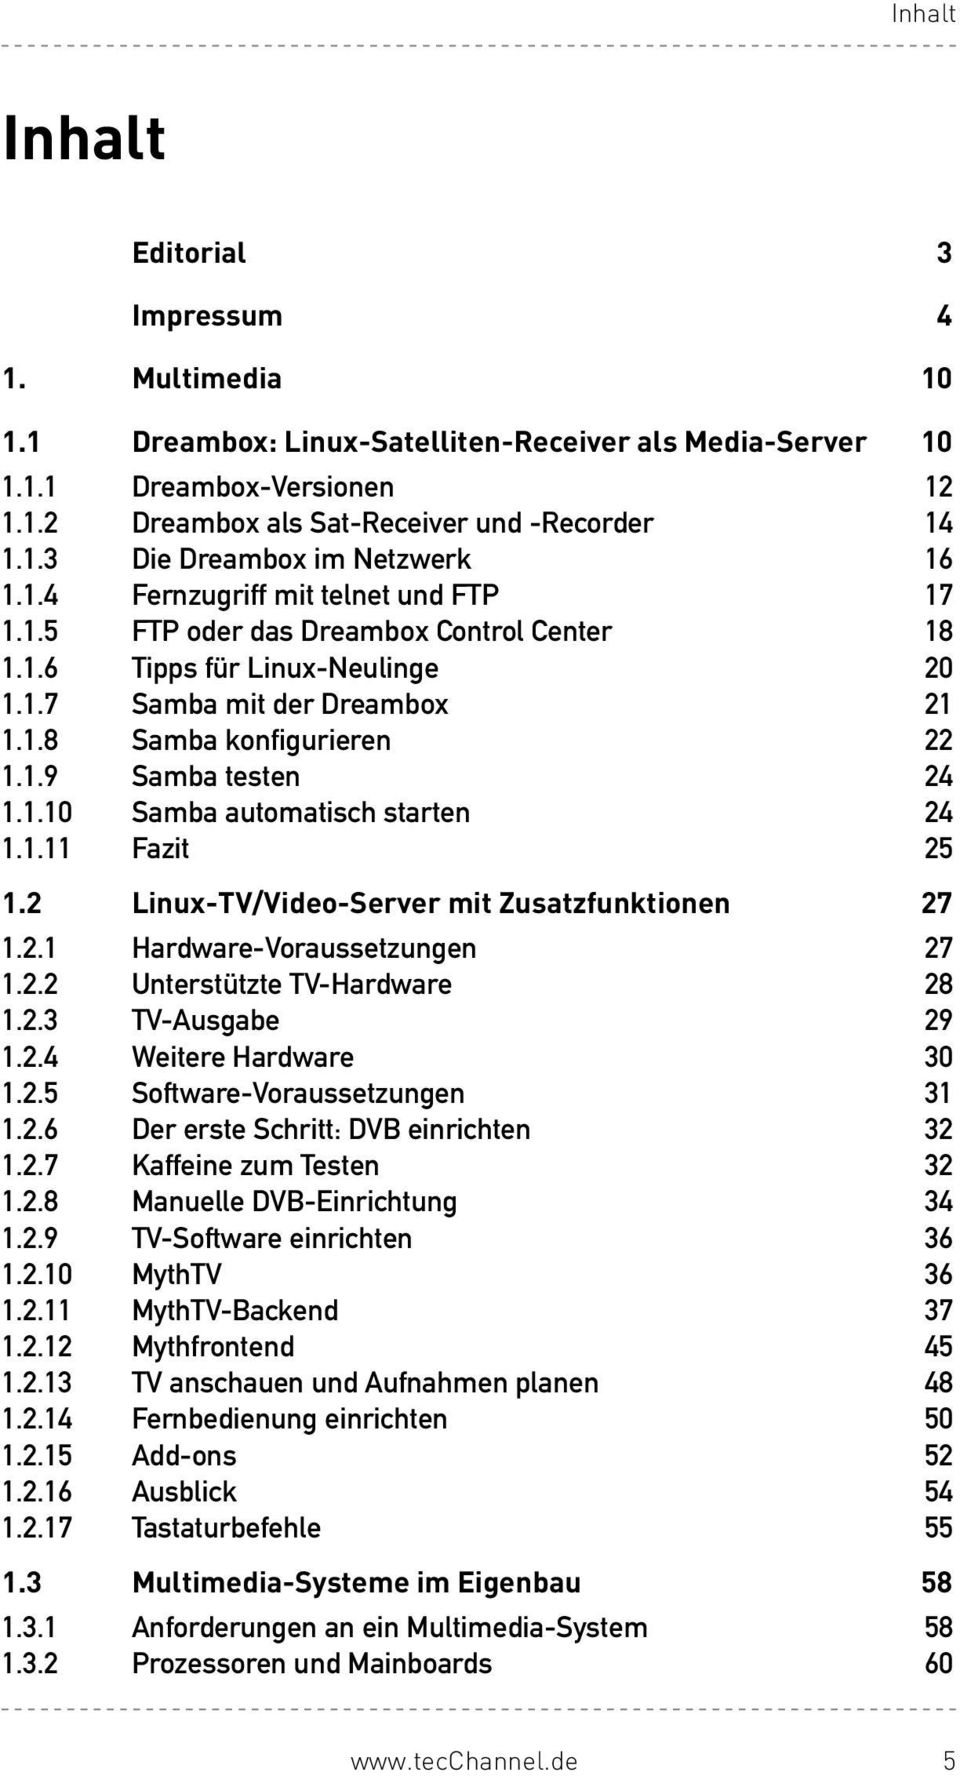 1.10 Samba automatisch starten 24 1.1.11 Fazit 25 1.2 Linux-TV/Video-Server mit Zusatzfunktionen 27 1.2.1 Hardware-Voraussetzungen 27 1.2.2 Unterstützte TV-Hardware 28 1.2.3 TV-Ausgabe 29 1.2.4 Weitere Hardware 30 1.